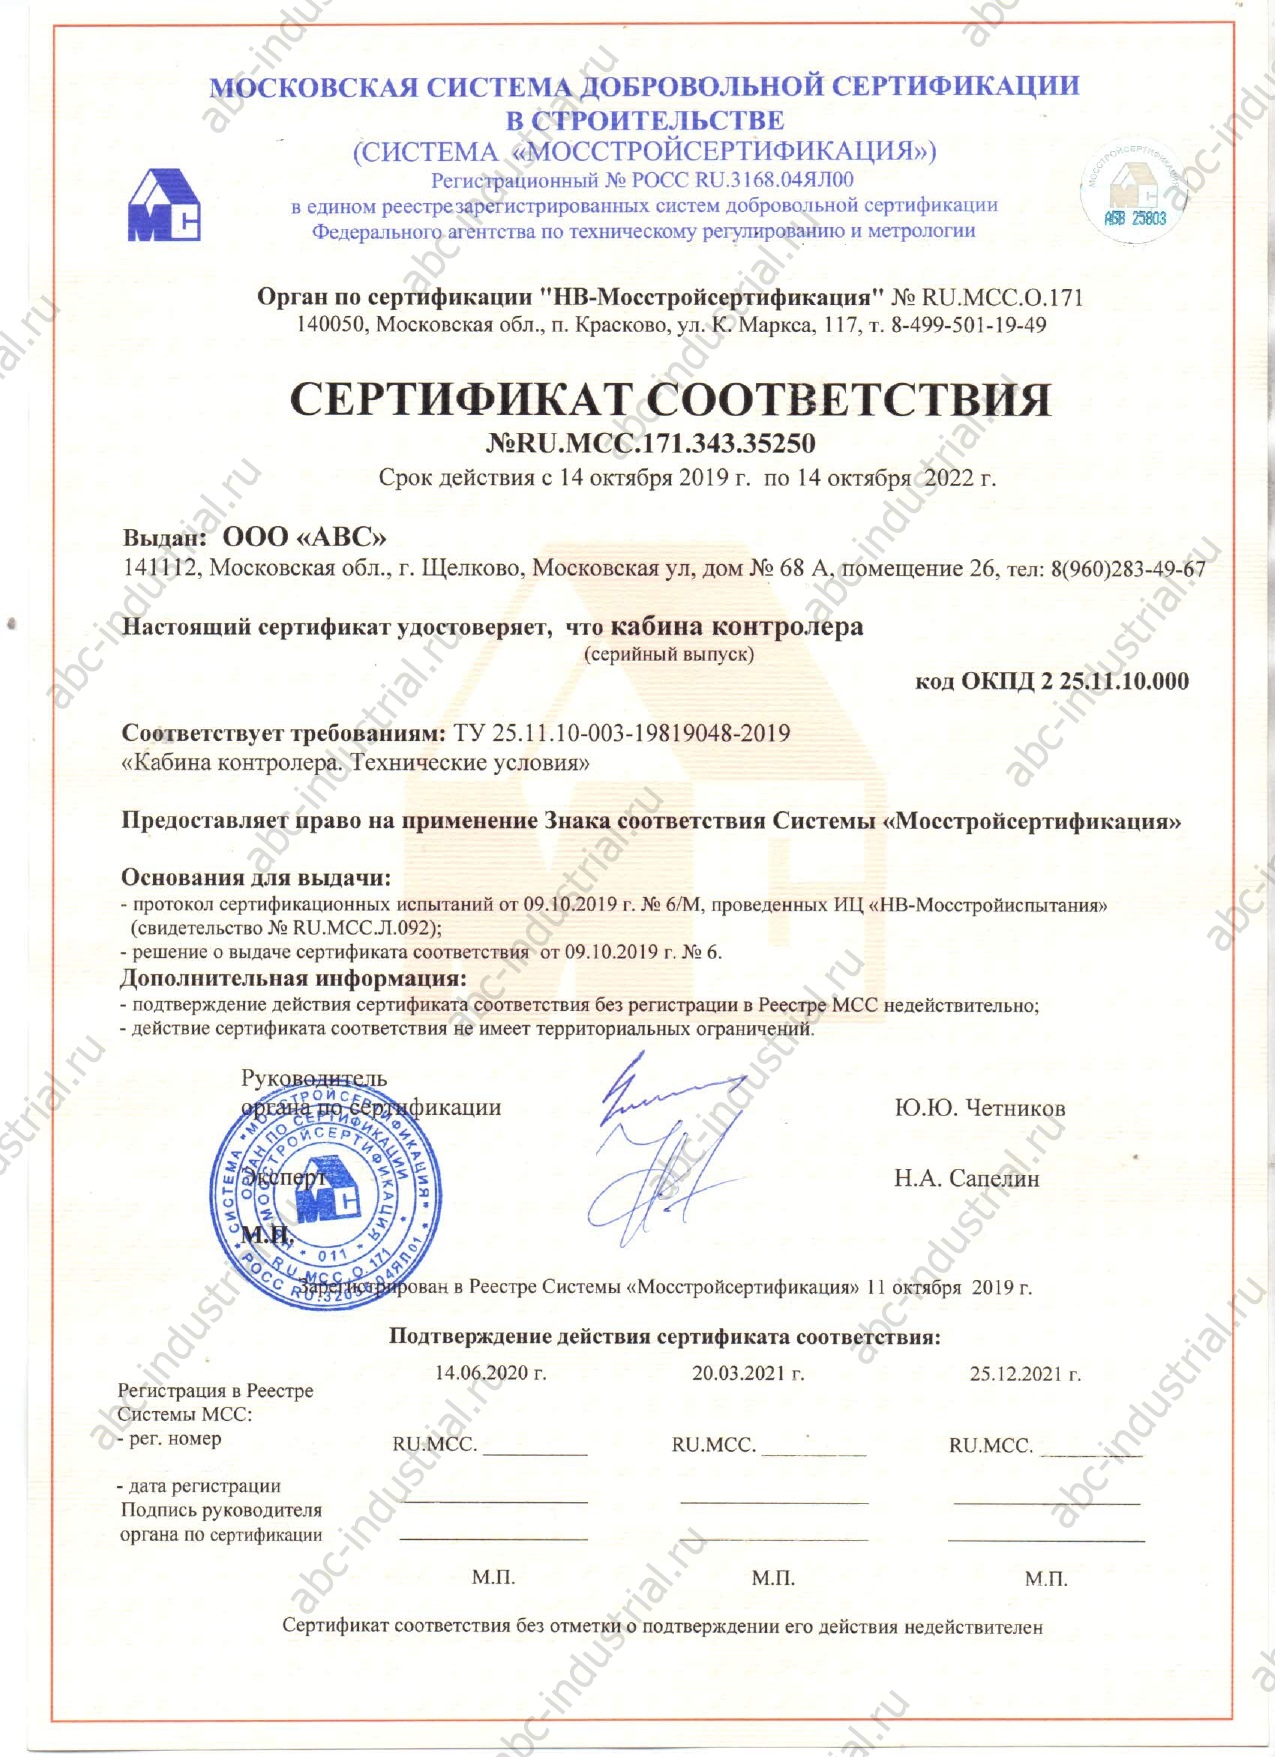 Сертификат соответствия на кабину контролера